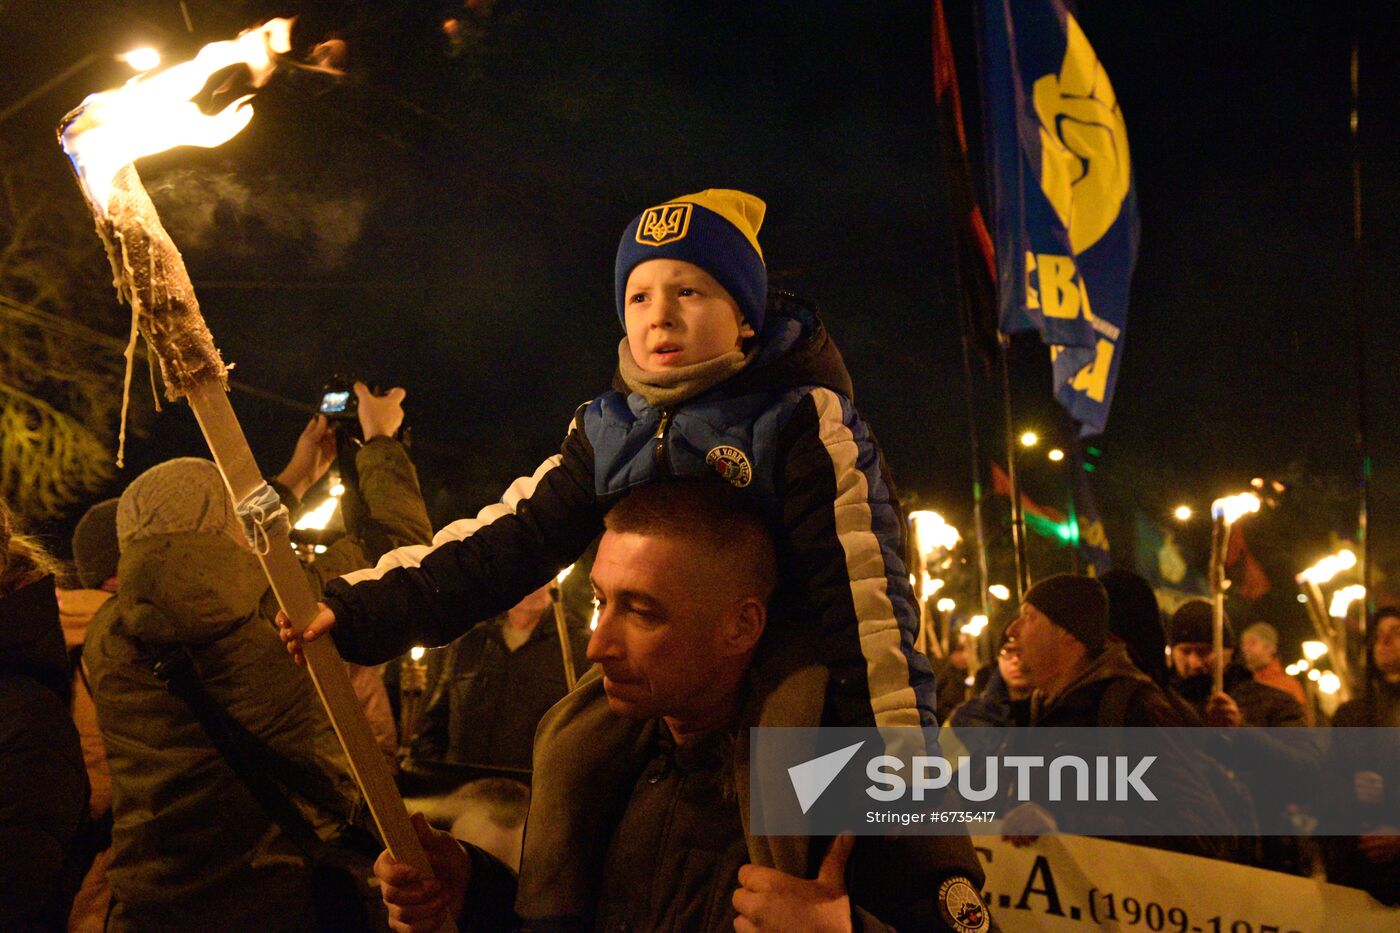 Ukraine Torch March